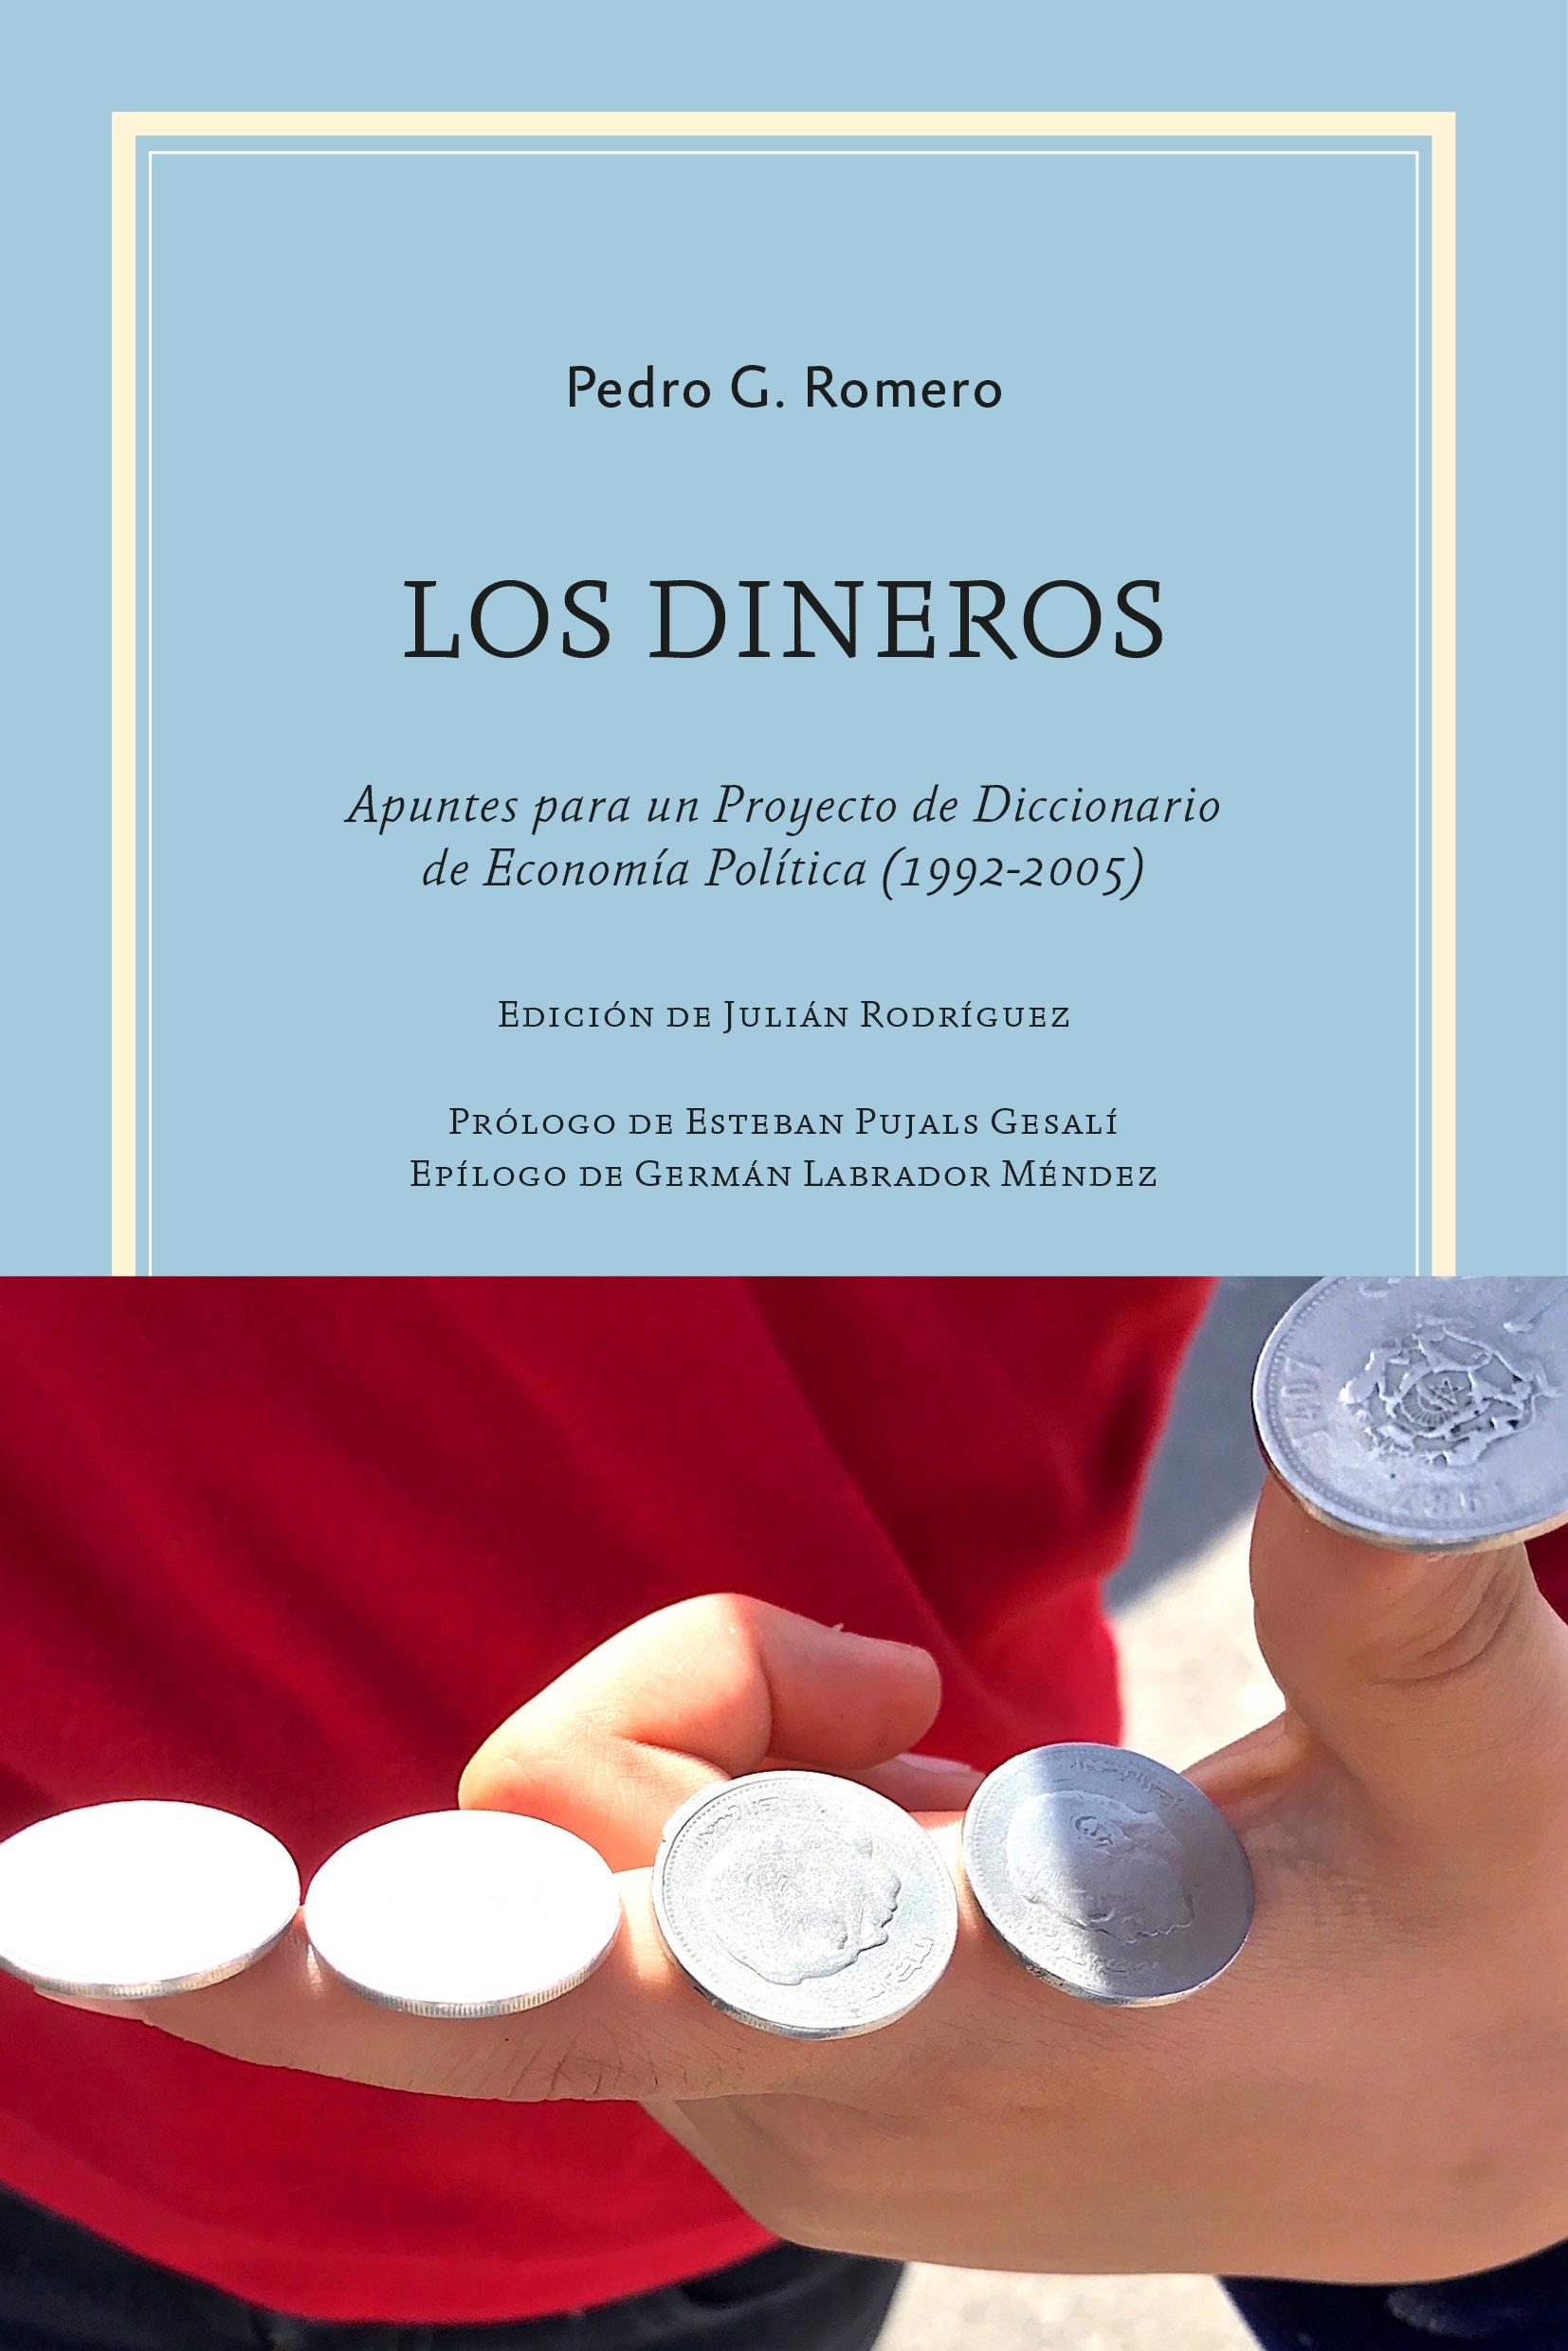 Dineros, Los "Apuntes para un Proyecto de Diccionario de Economía Política (1992-2005"